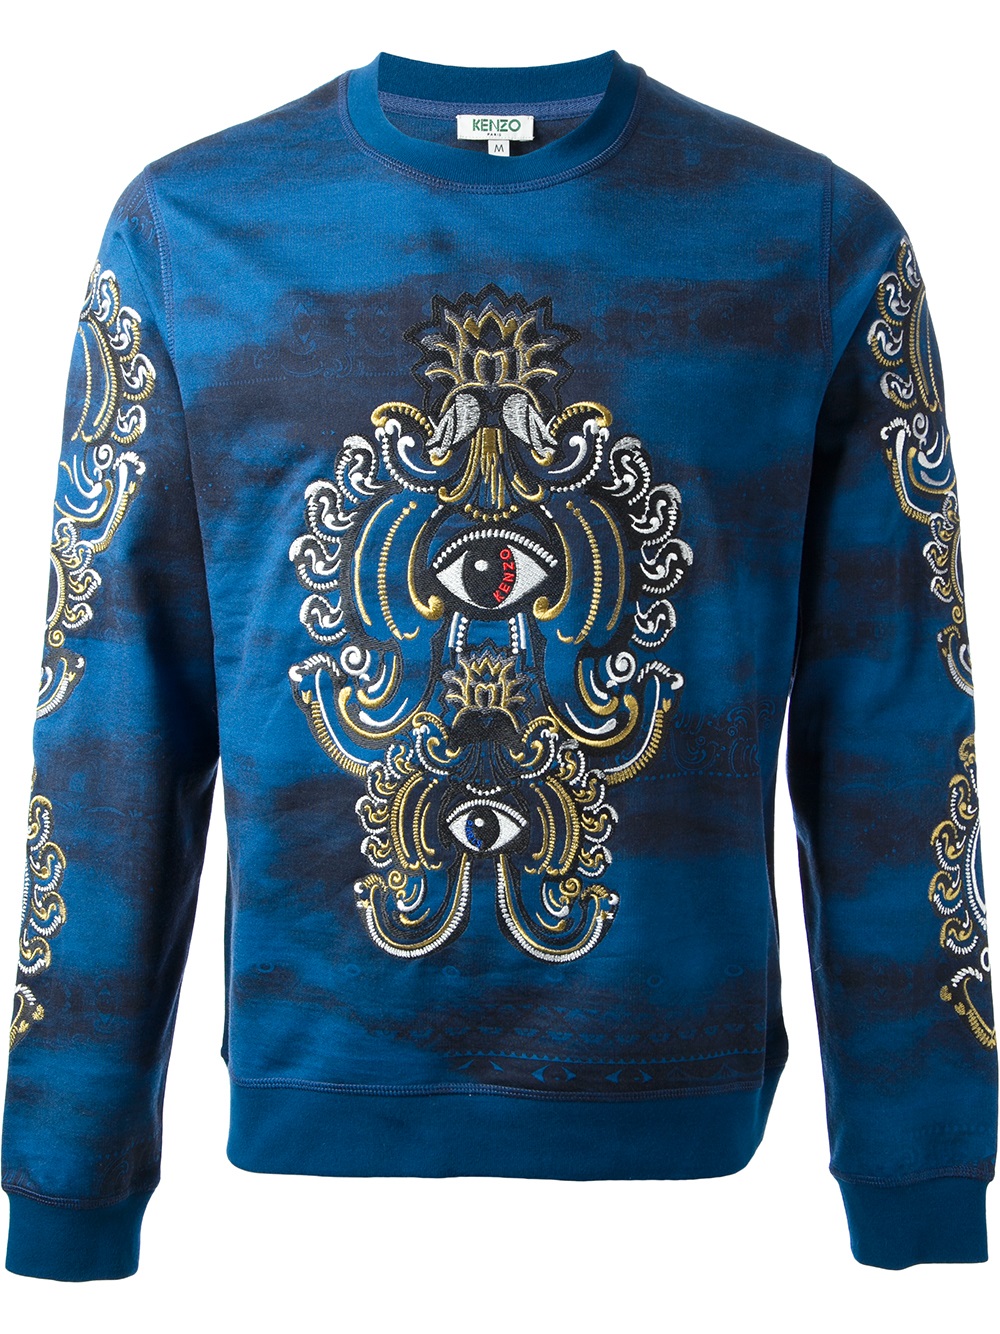 Lyst - Kenzo Lotus Eye Sweater in Blue for Men